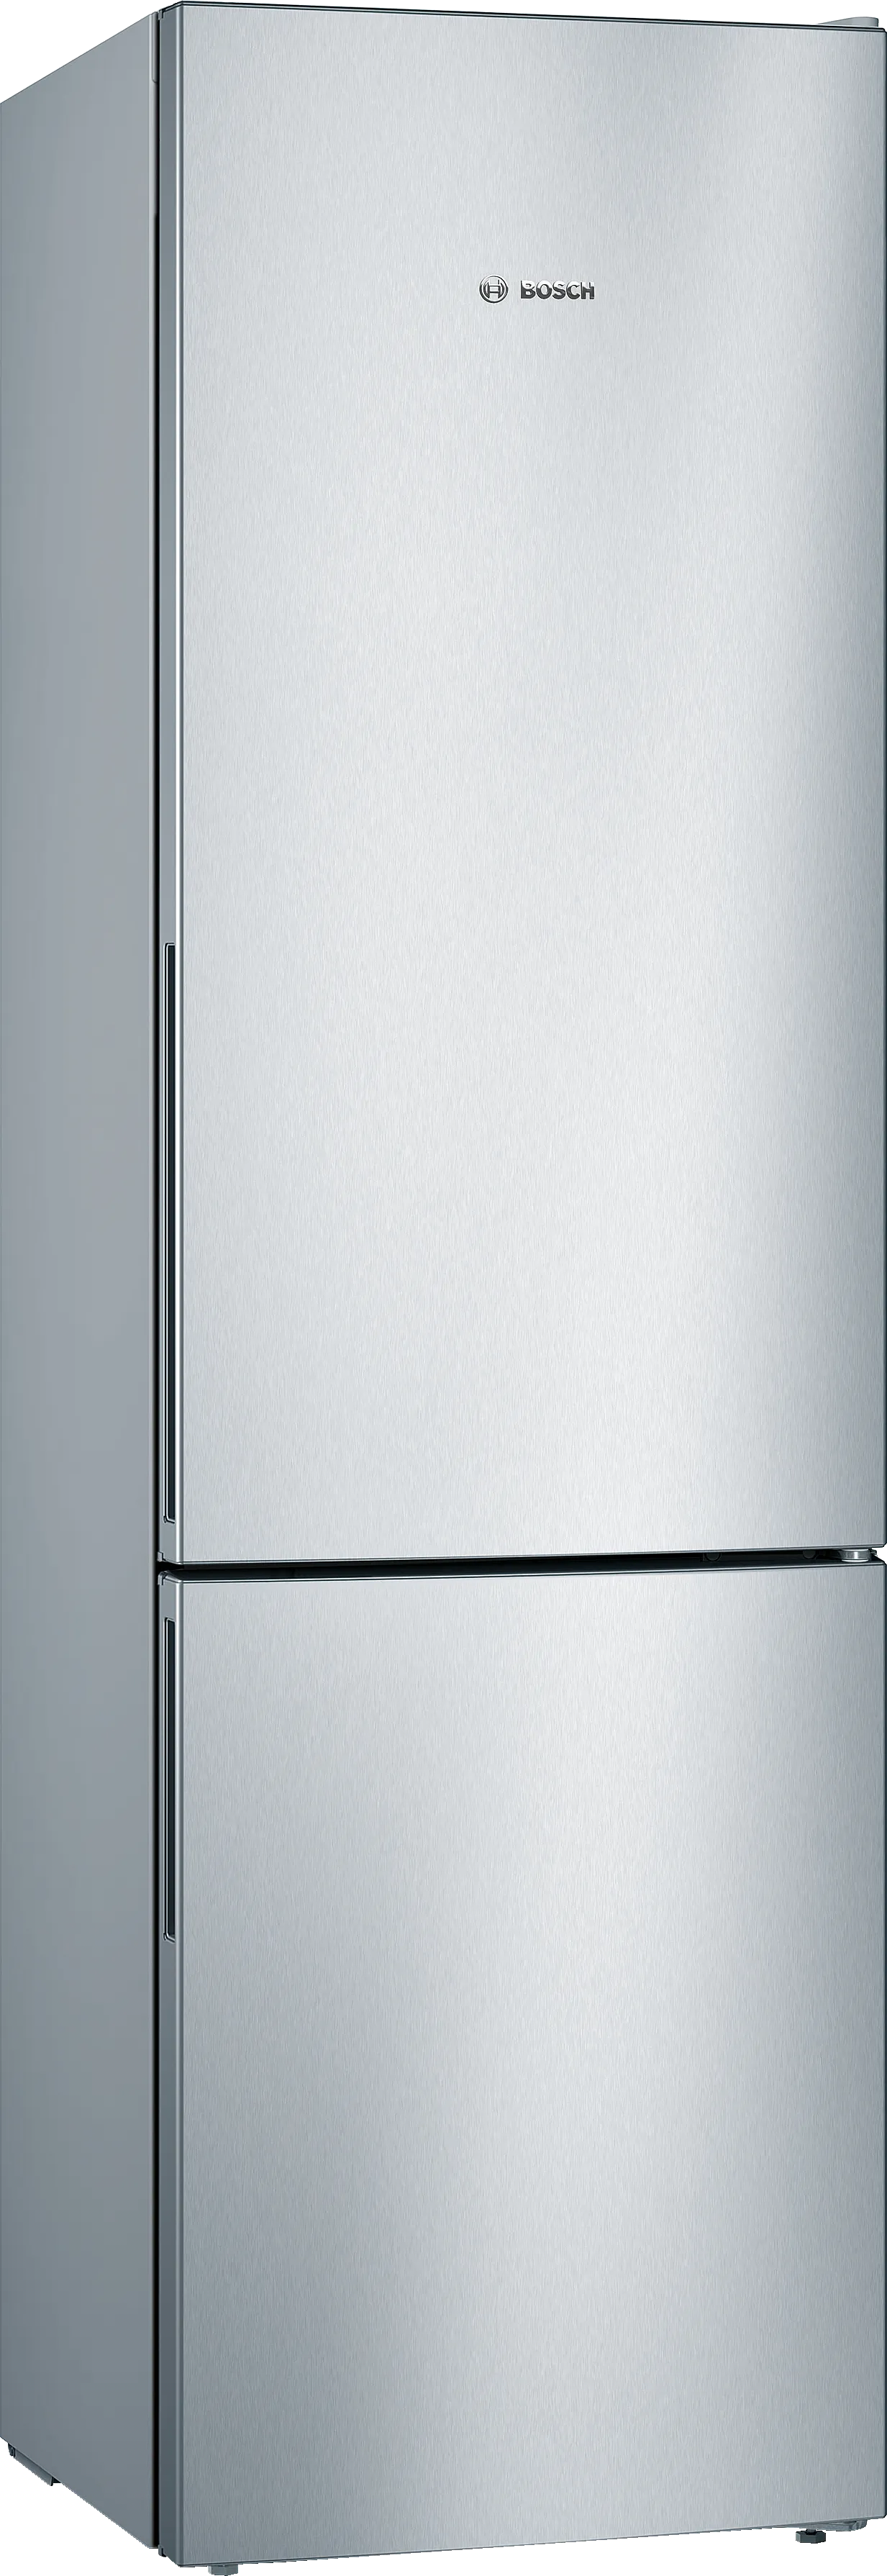 Seria 4 Combină frigorifică independentă 201 x 60 cm Inox Look 